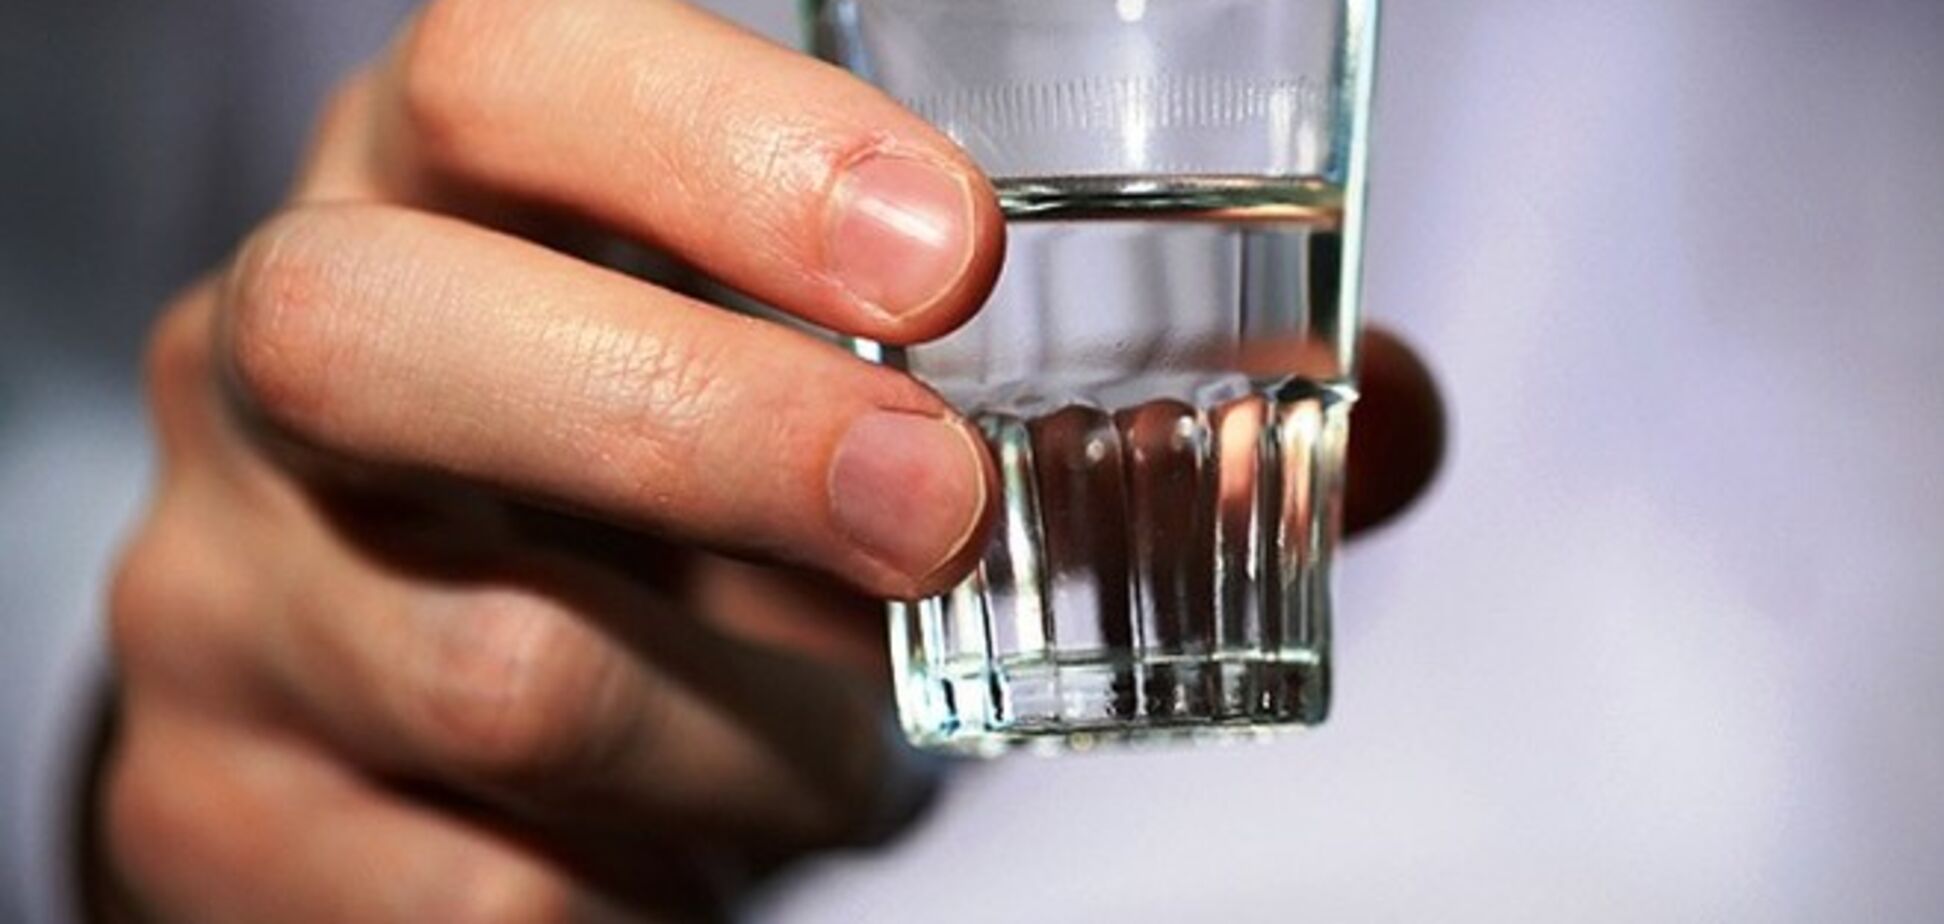 25 невероятных фактов про алкоголь